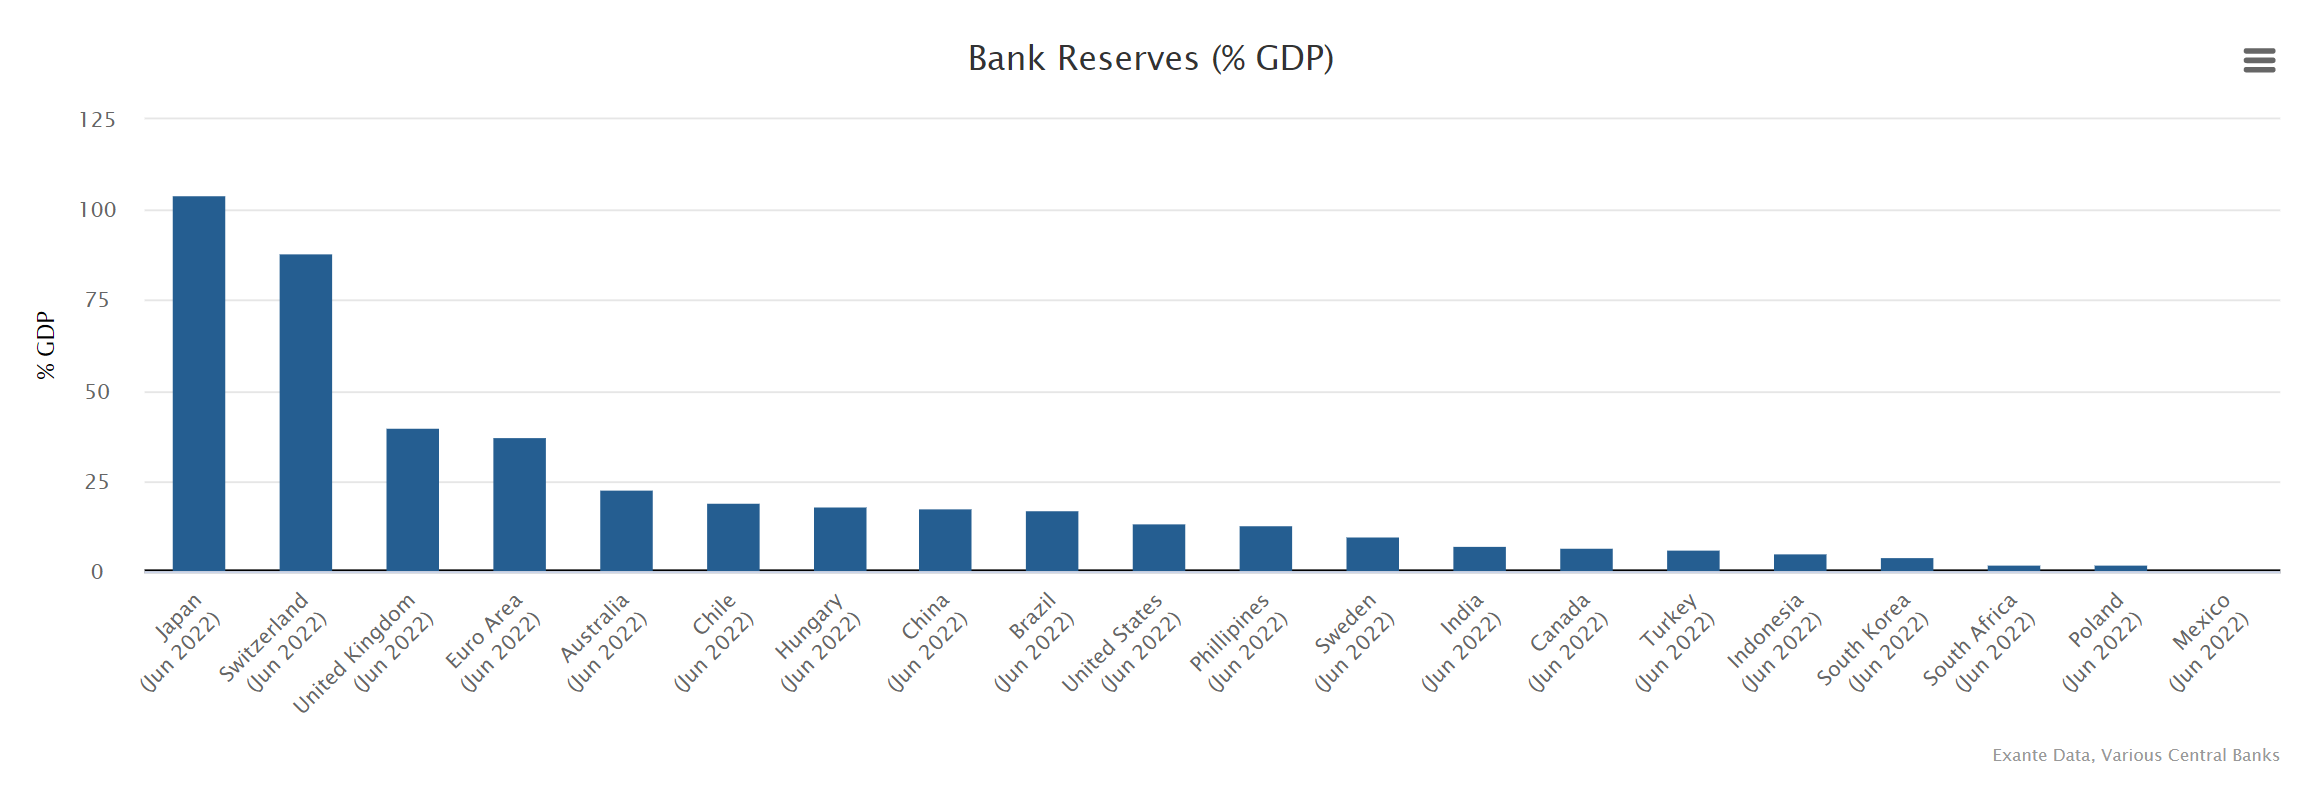 Central banks' bank reserves